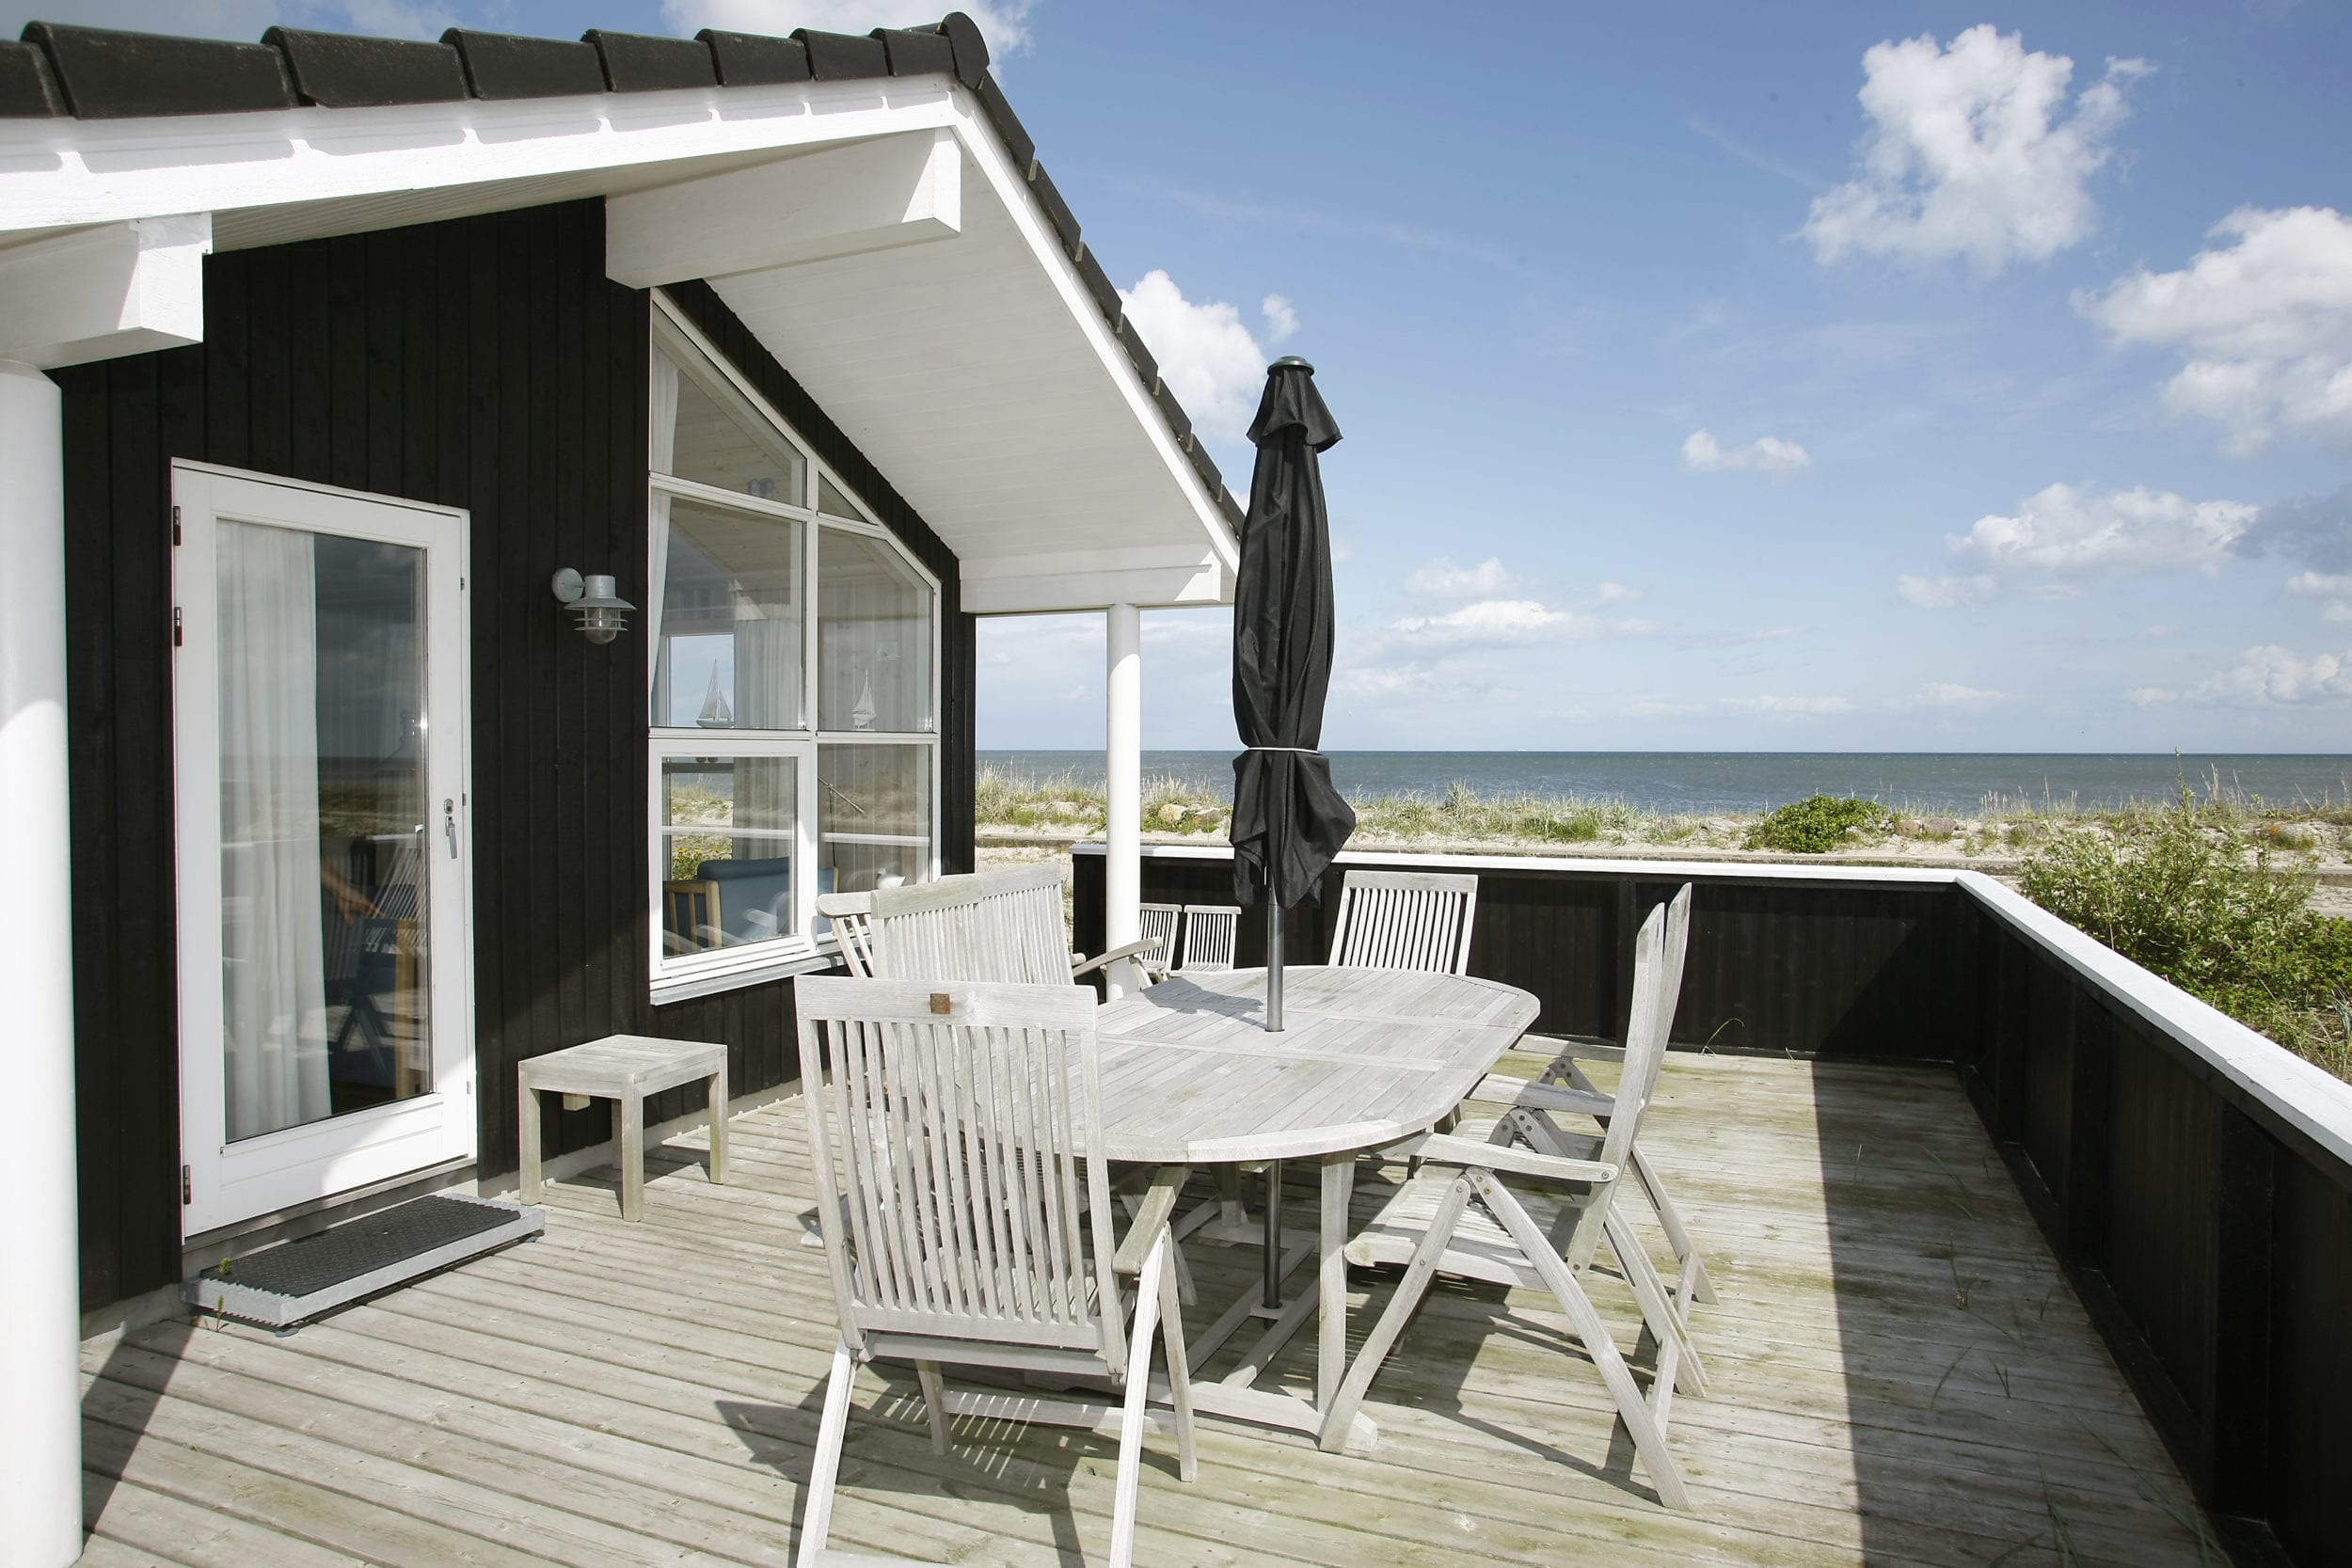 Stor dansk feriehusudlejer øger danske bookinger med 60 procent